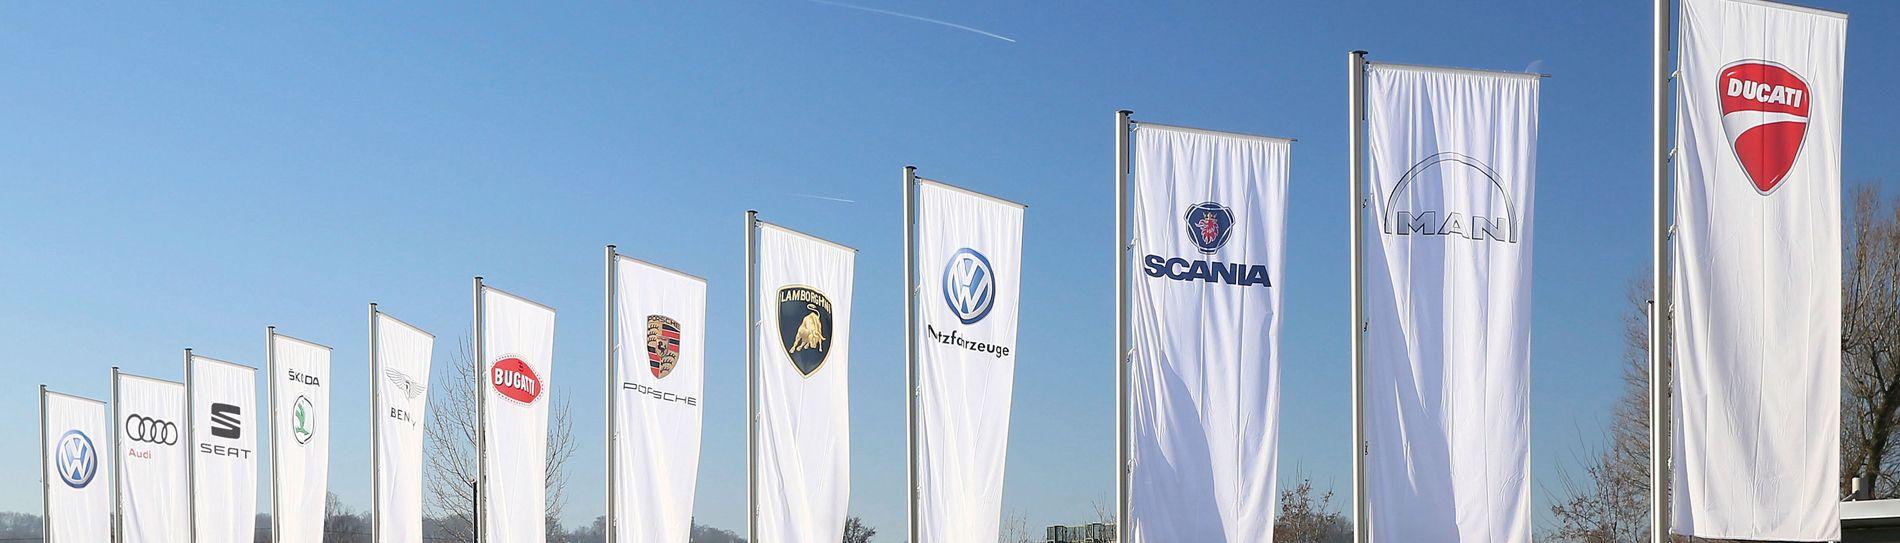 Volkswagen of America Group Logo - Brands & Models of the Volkswagen Group